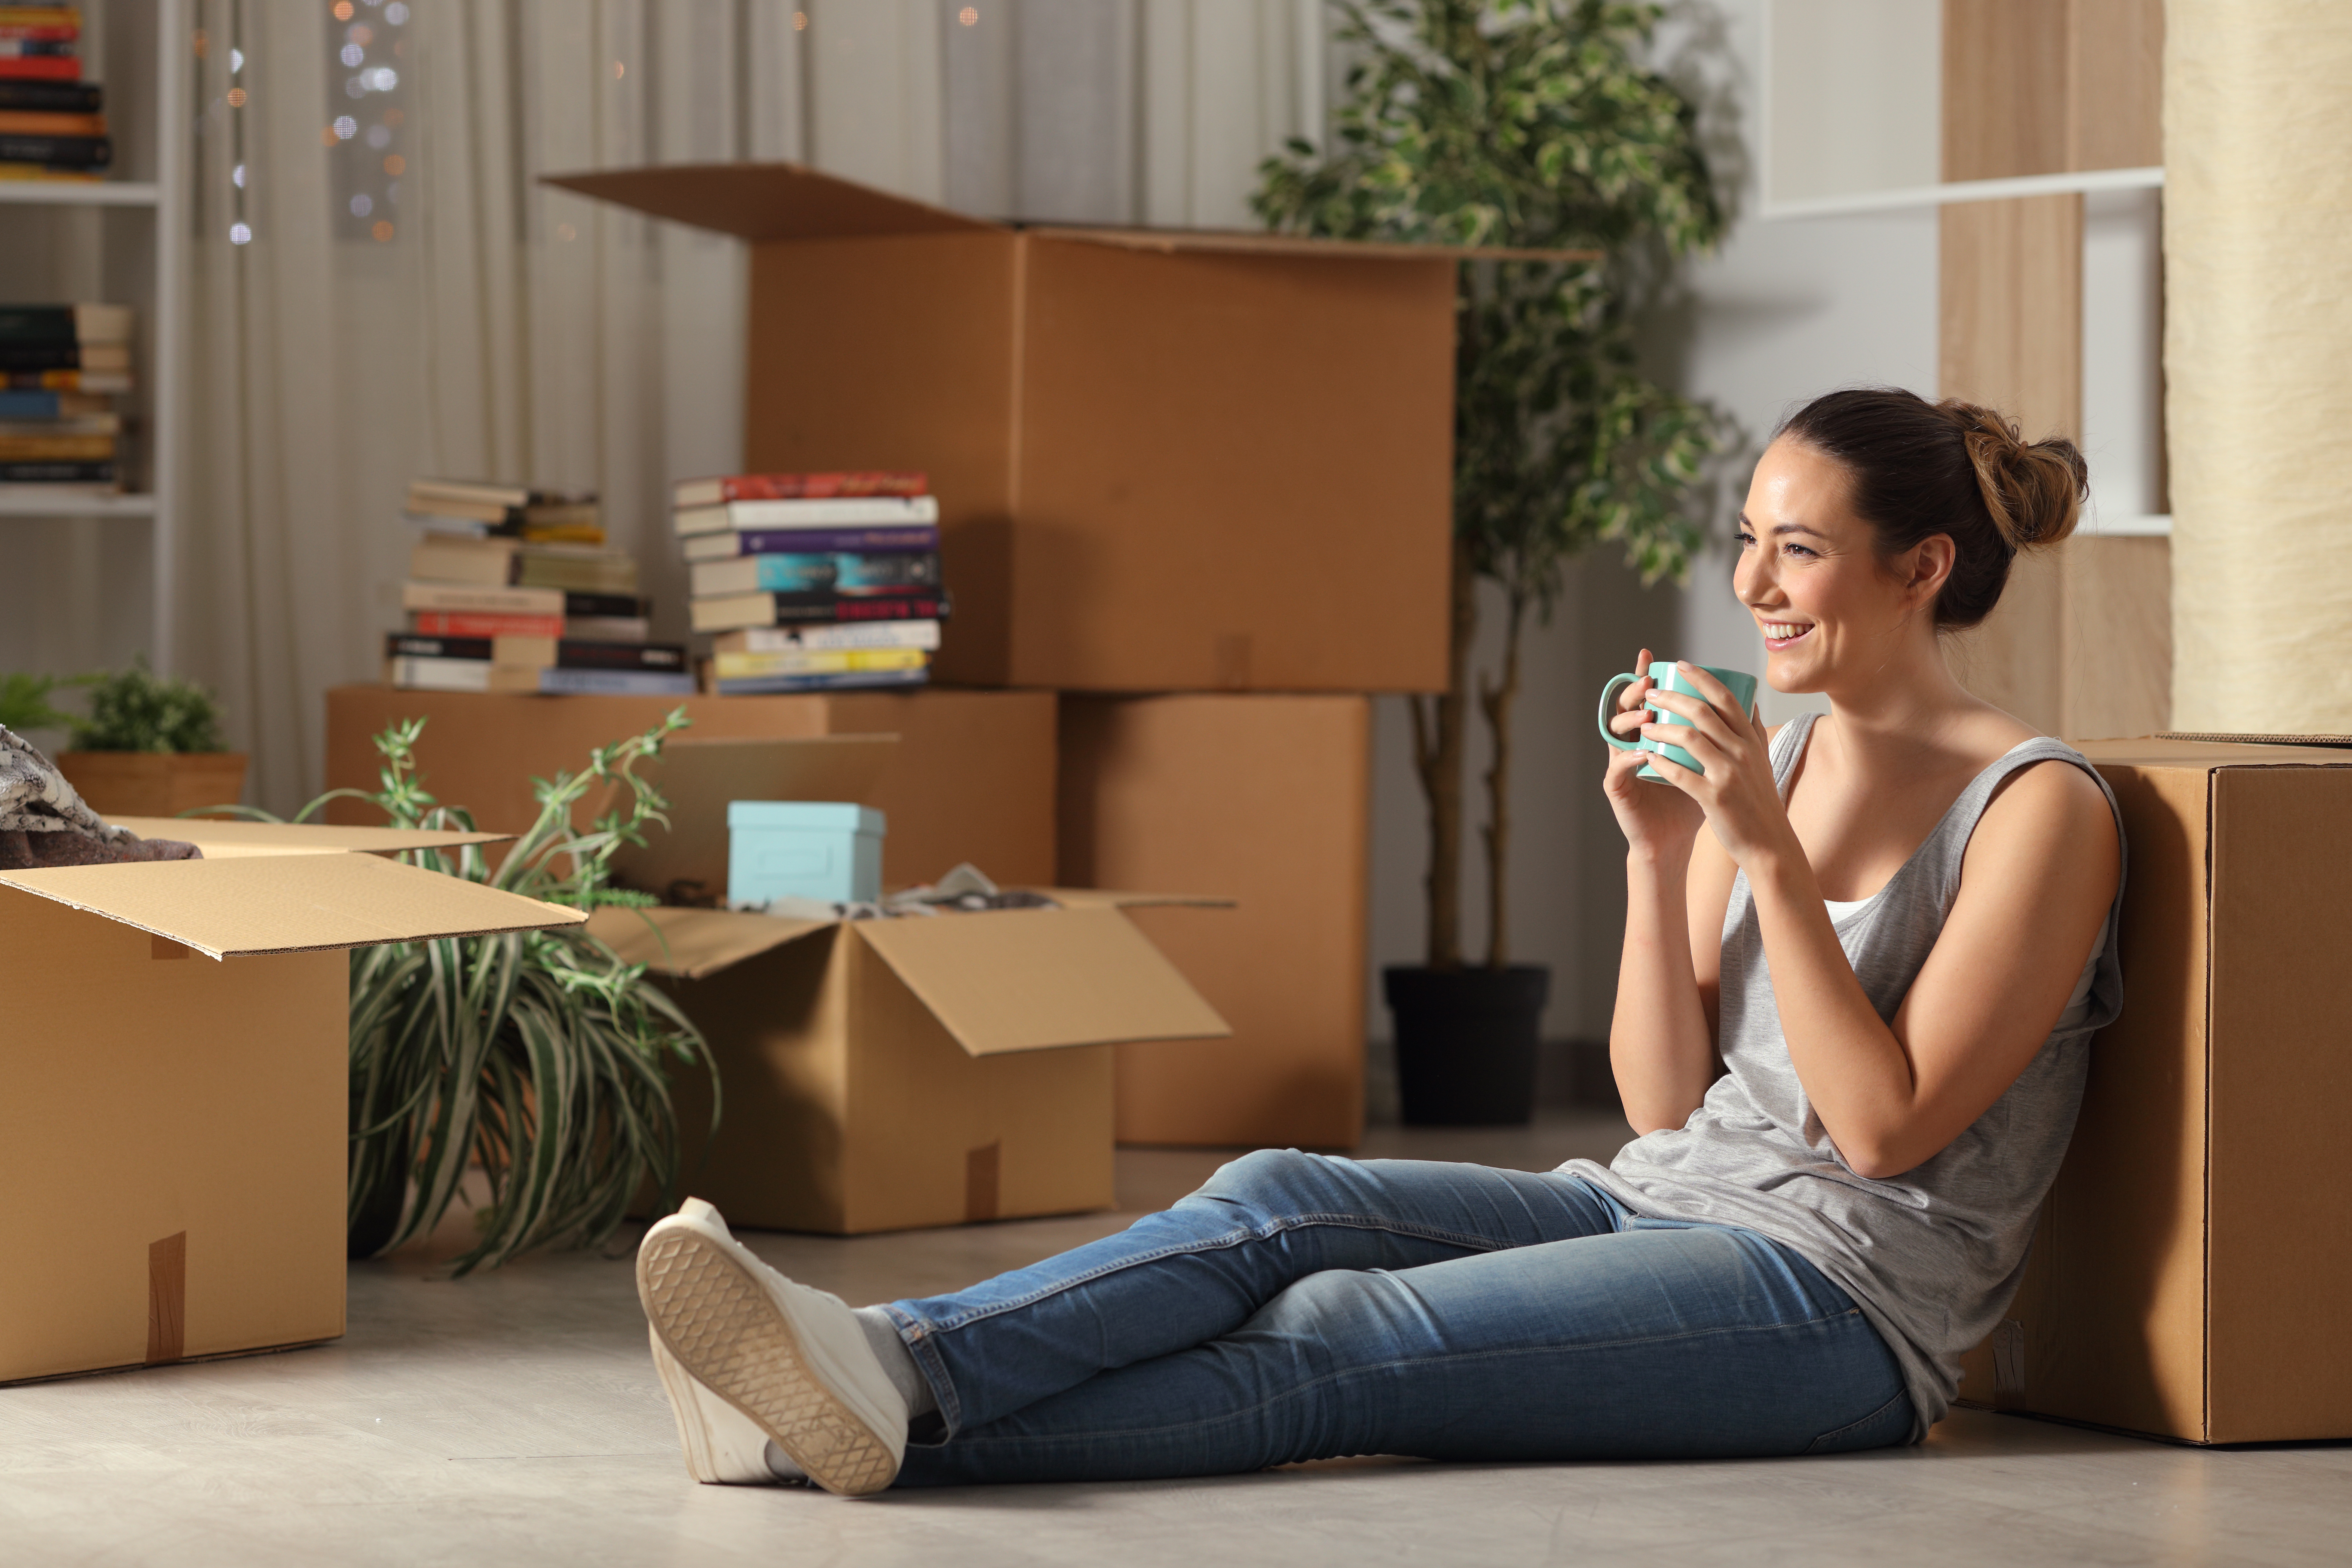 Una joven sentada en el suelo, rodeada de cajas de mudanza, bebiendo café. | Foto: Shutterstock